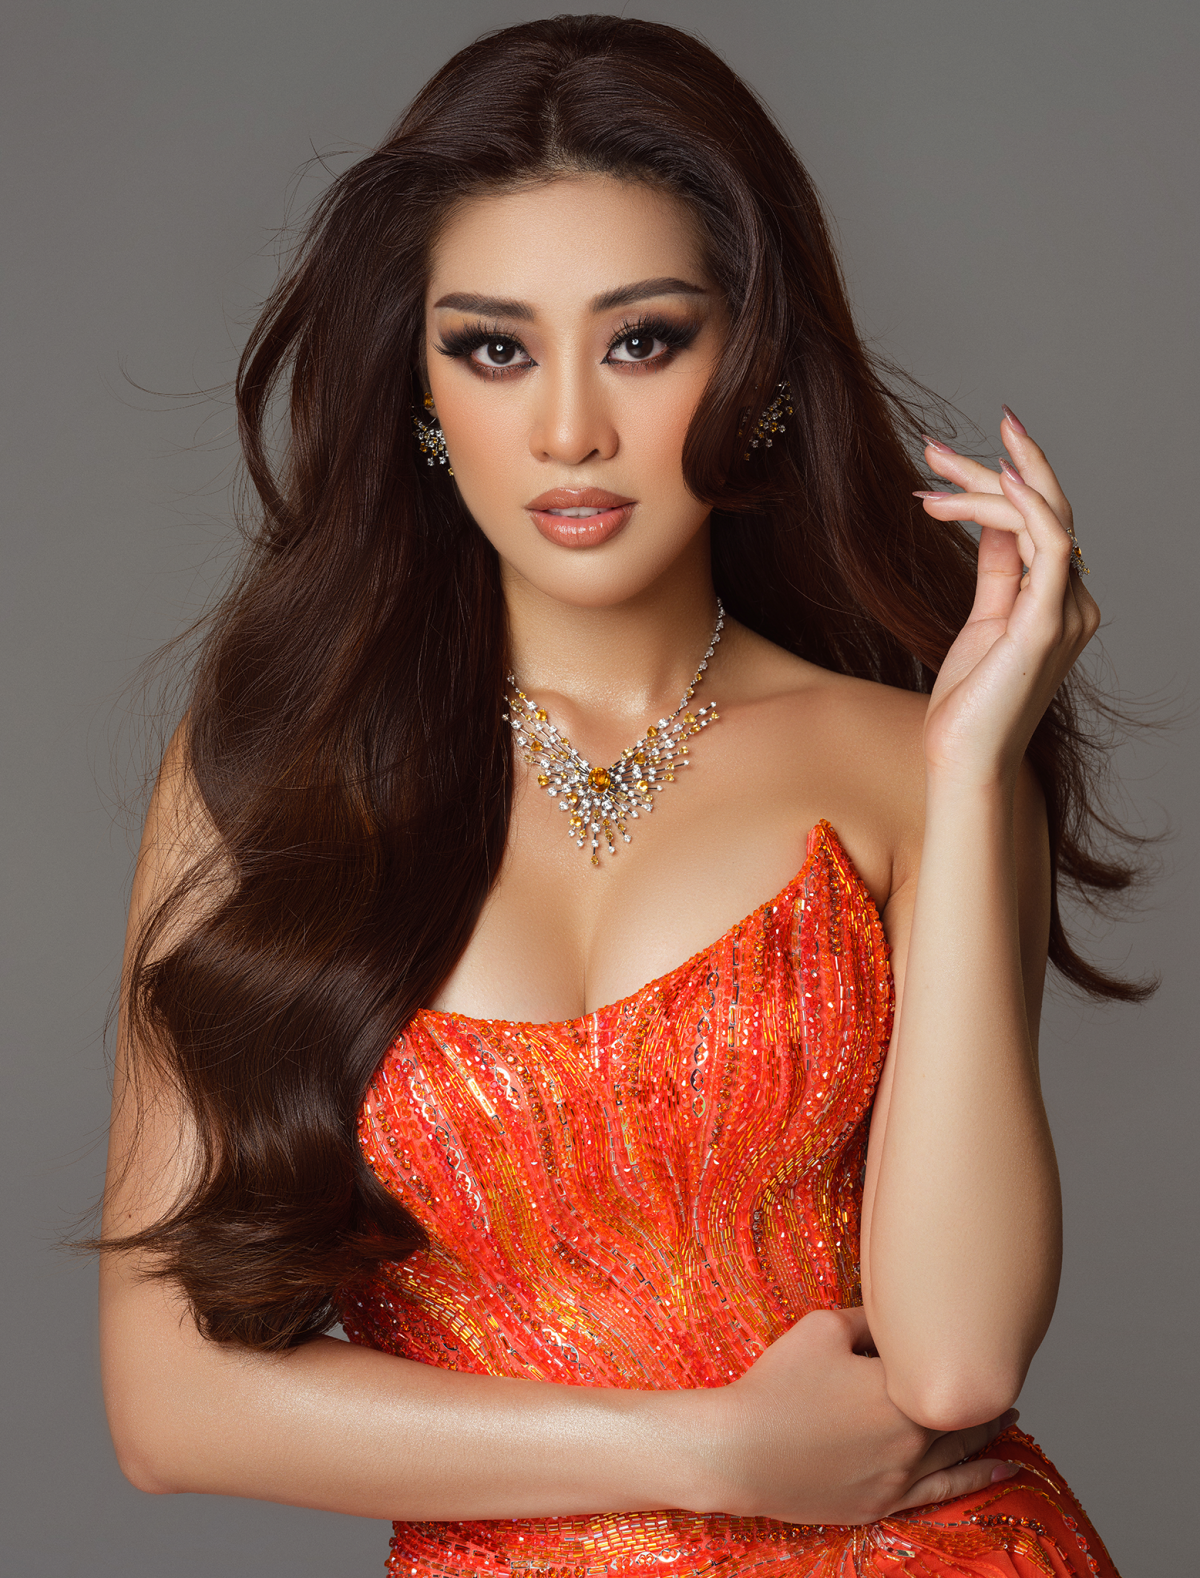 13 mỹ nhân Việt thi Miss Universe trước khi Hoa hậu Việt Nam ngừng quyền thi tại đấu trường nhan sắc này - Ảnh 3.